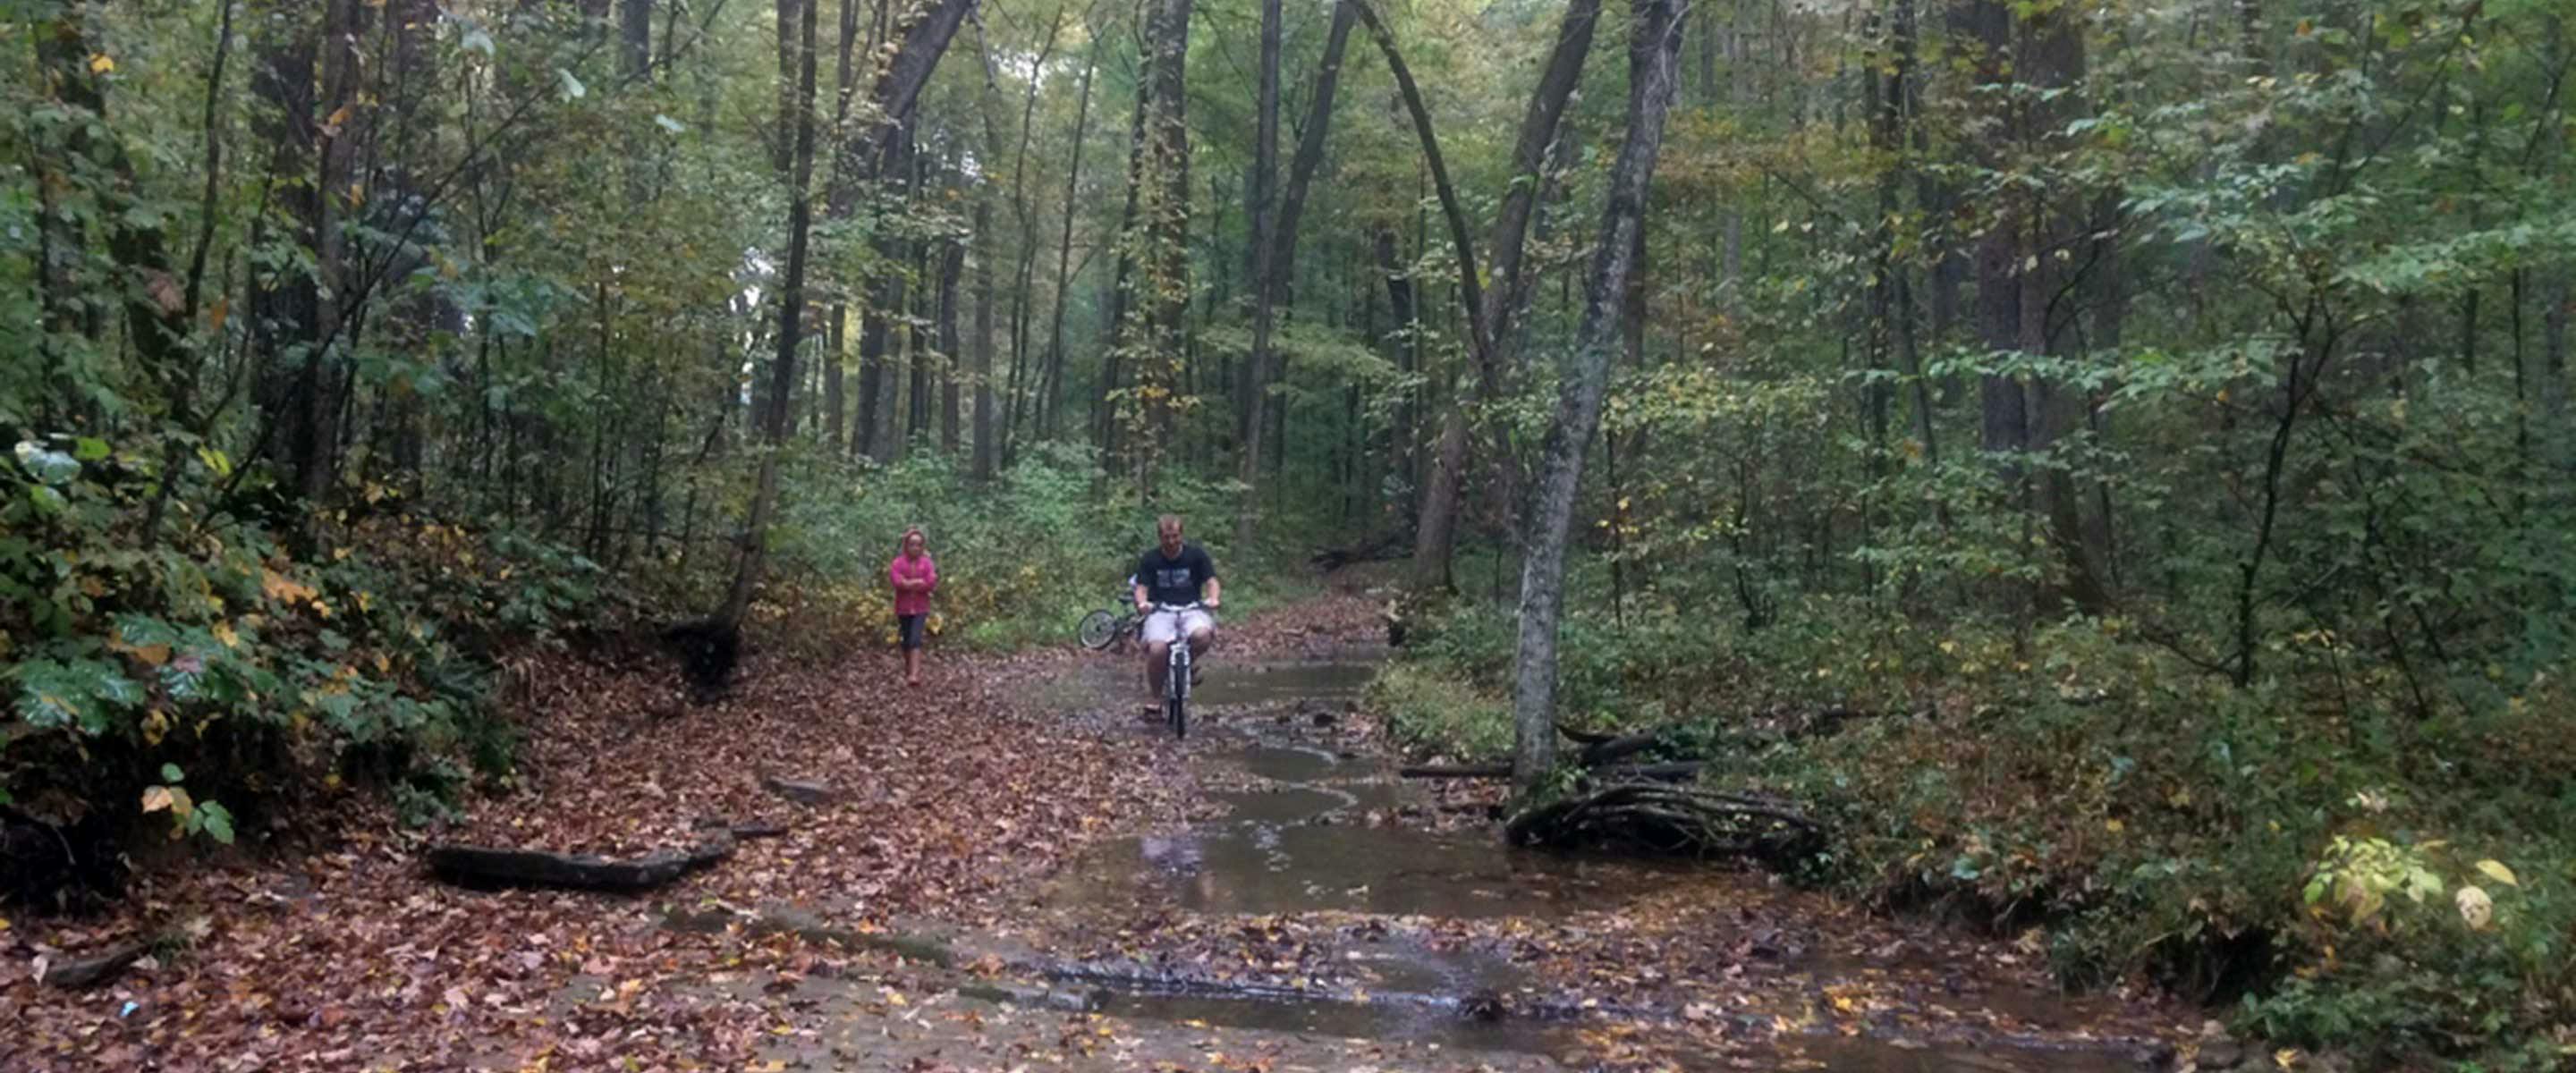 Bikes on leaf covered trail